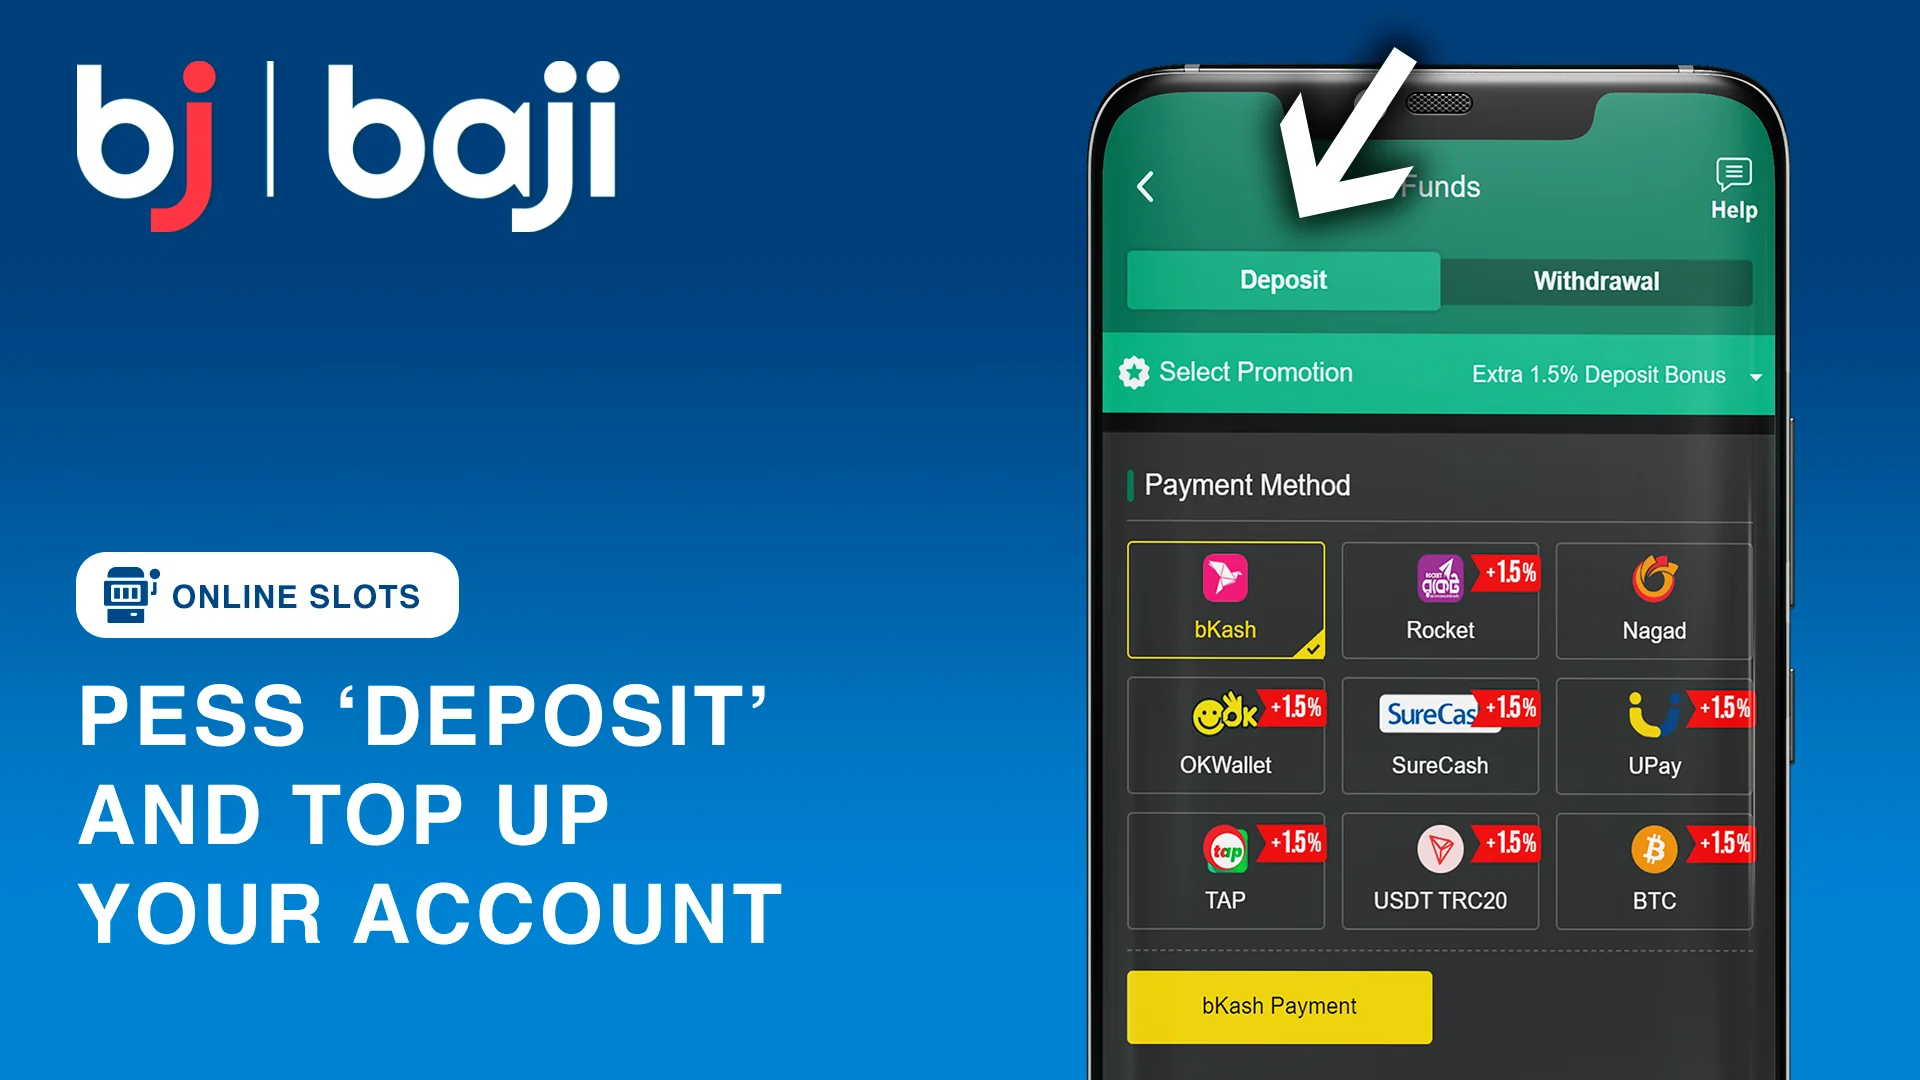 Press 'Deposit' to top up Baji Account